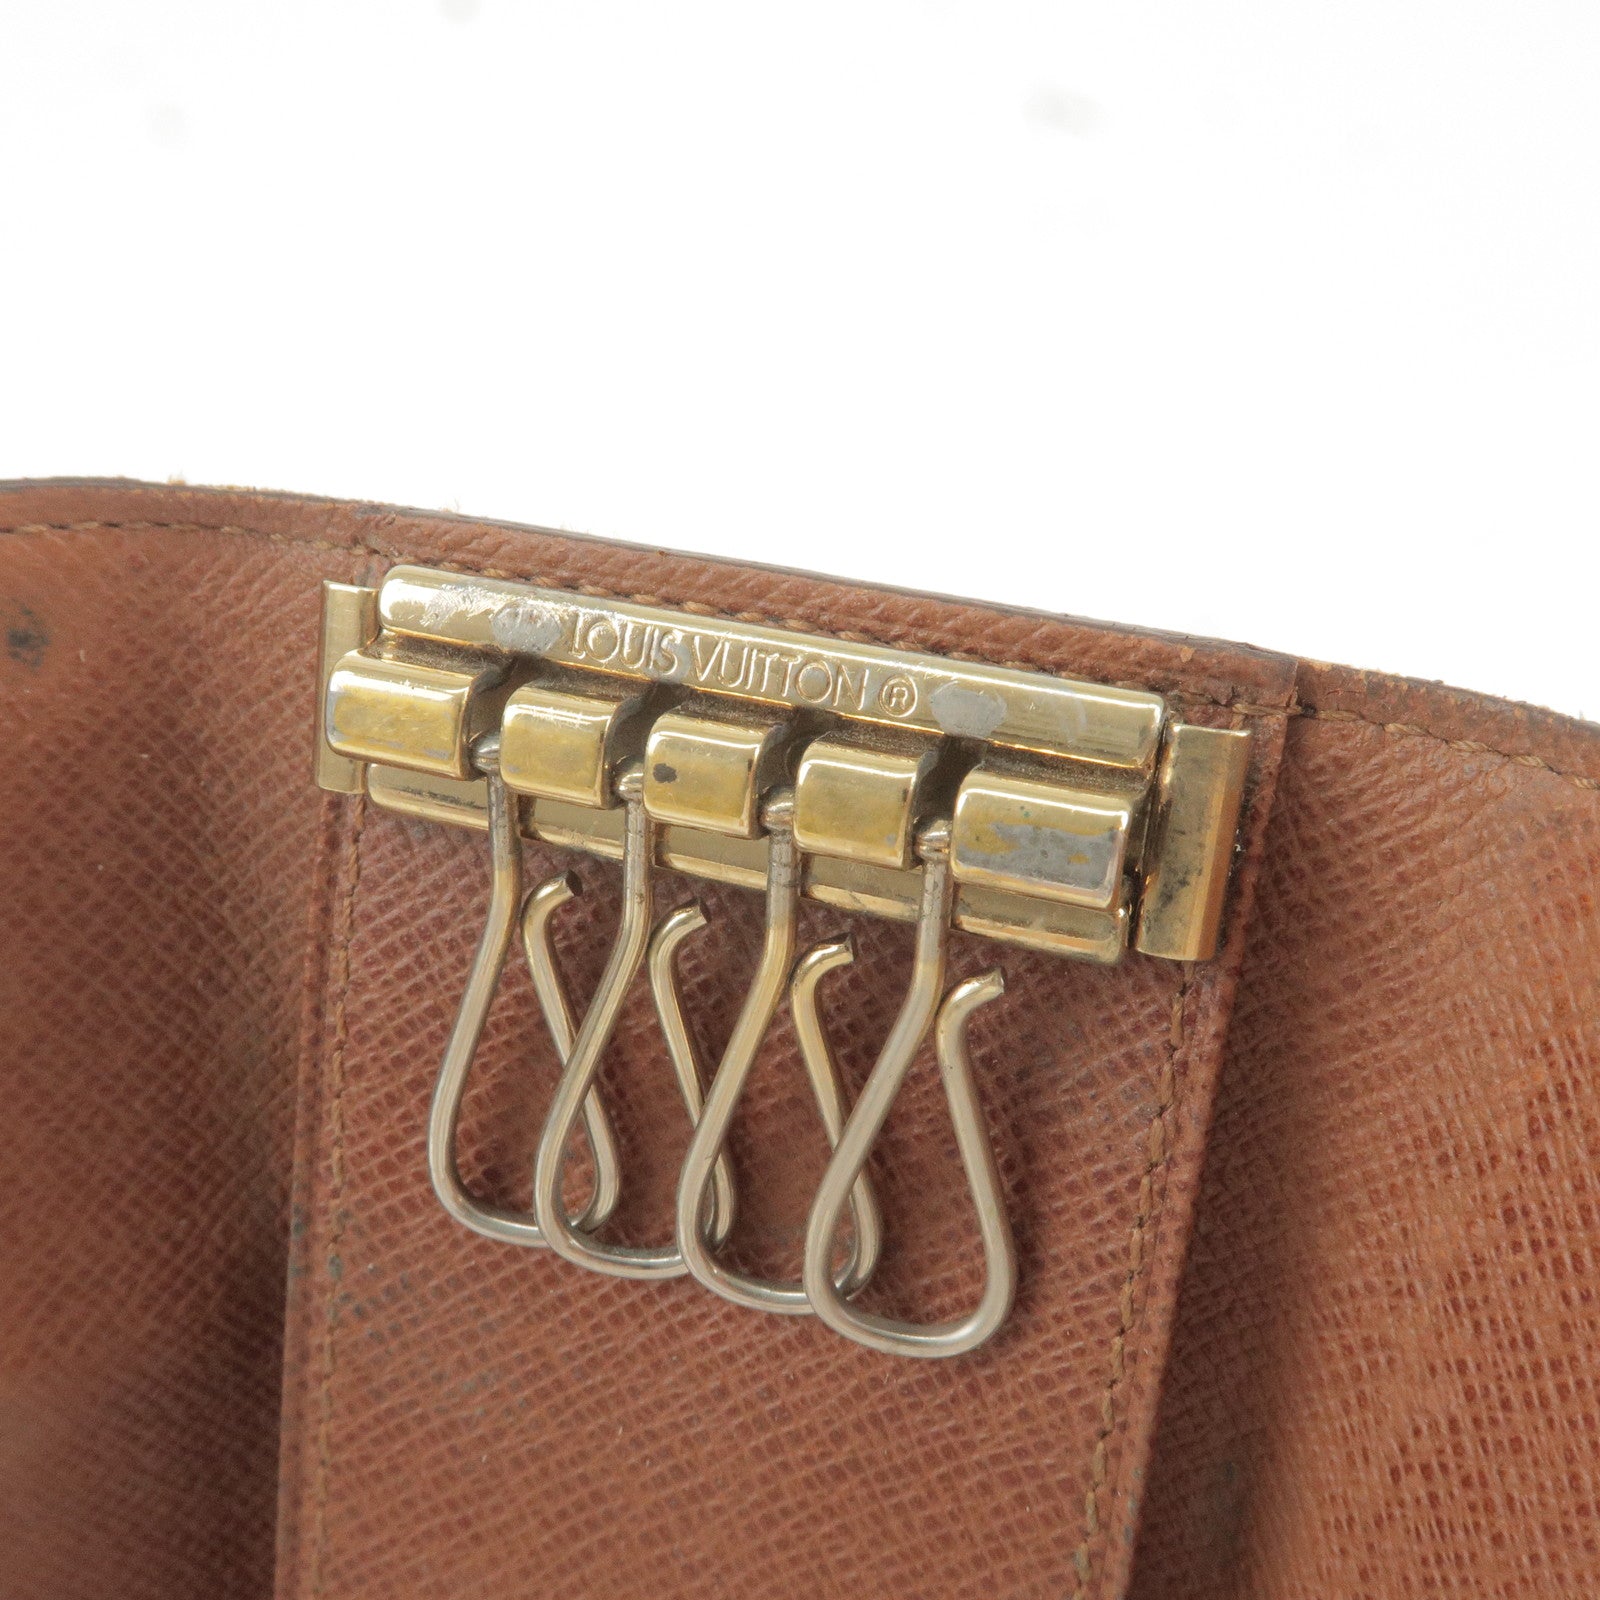 Louis - Case - M62631 – dct - 4 - Old - Style - Monogram - Vuitton